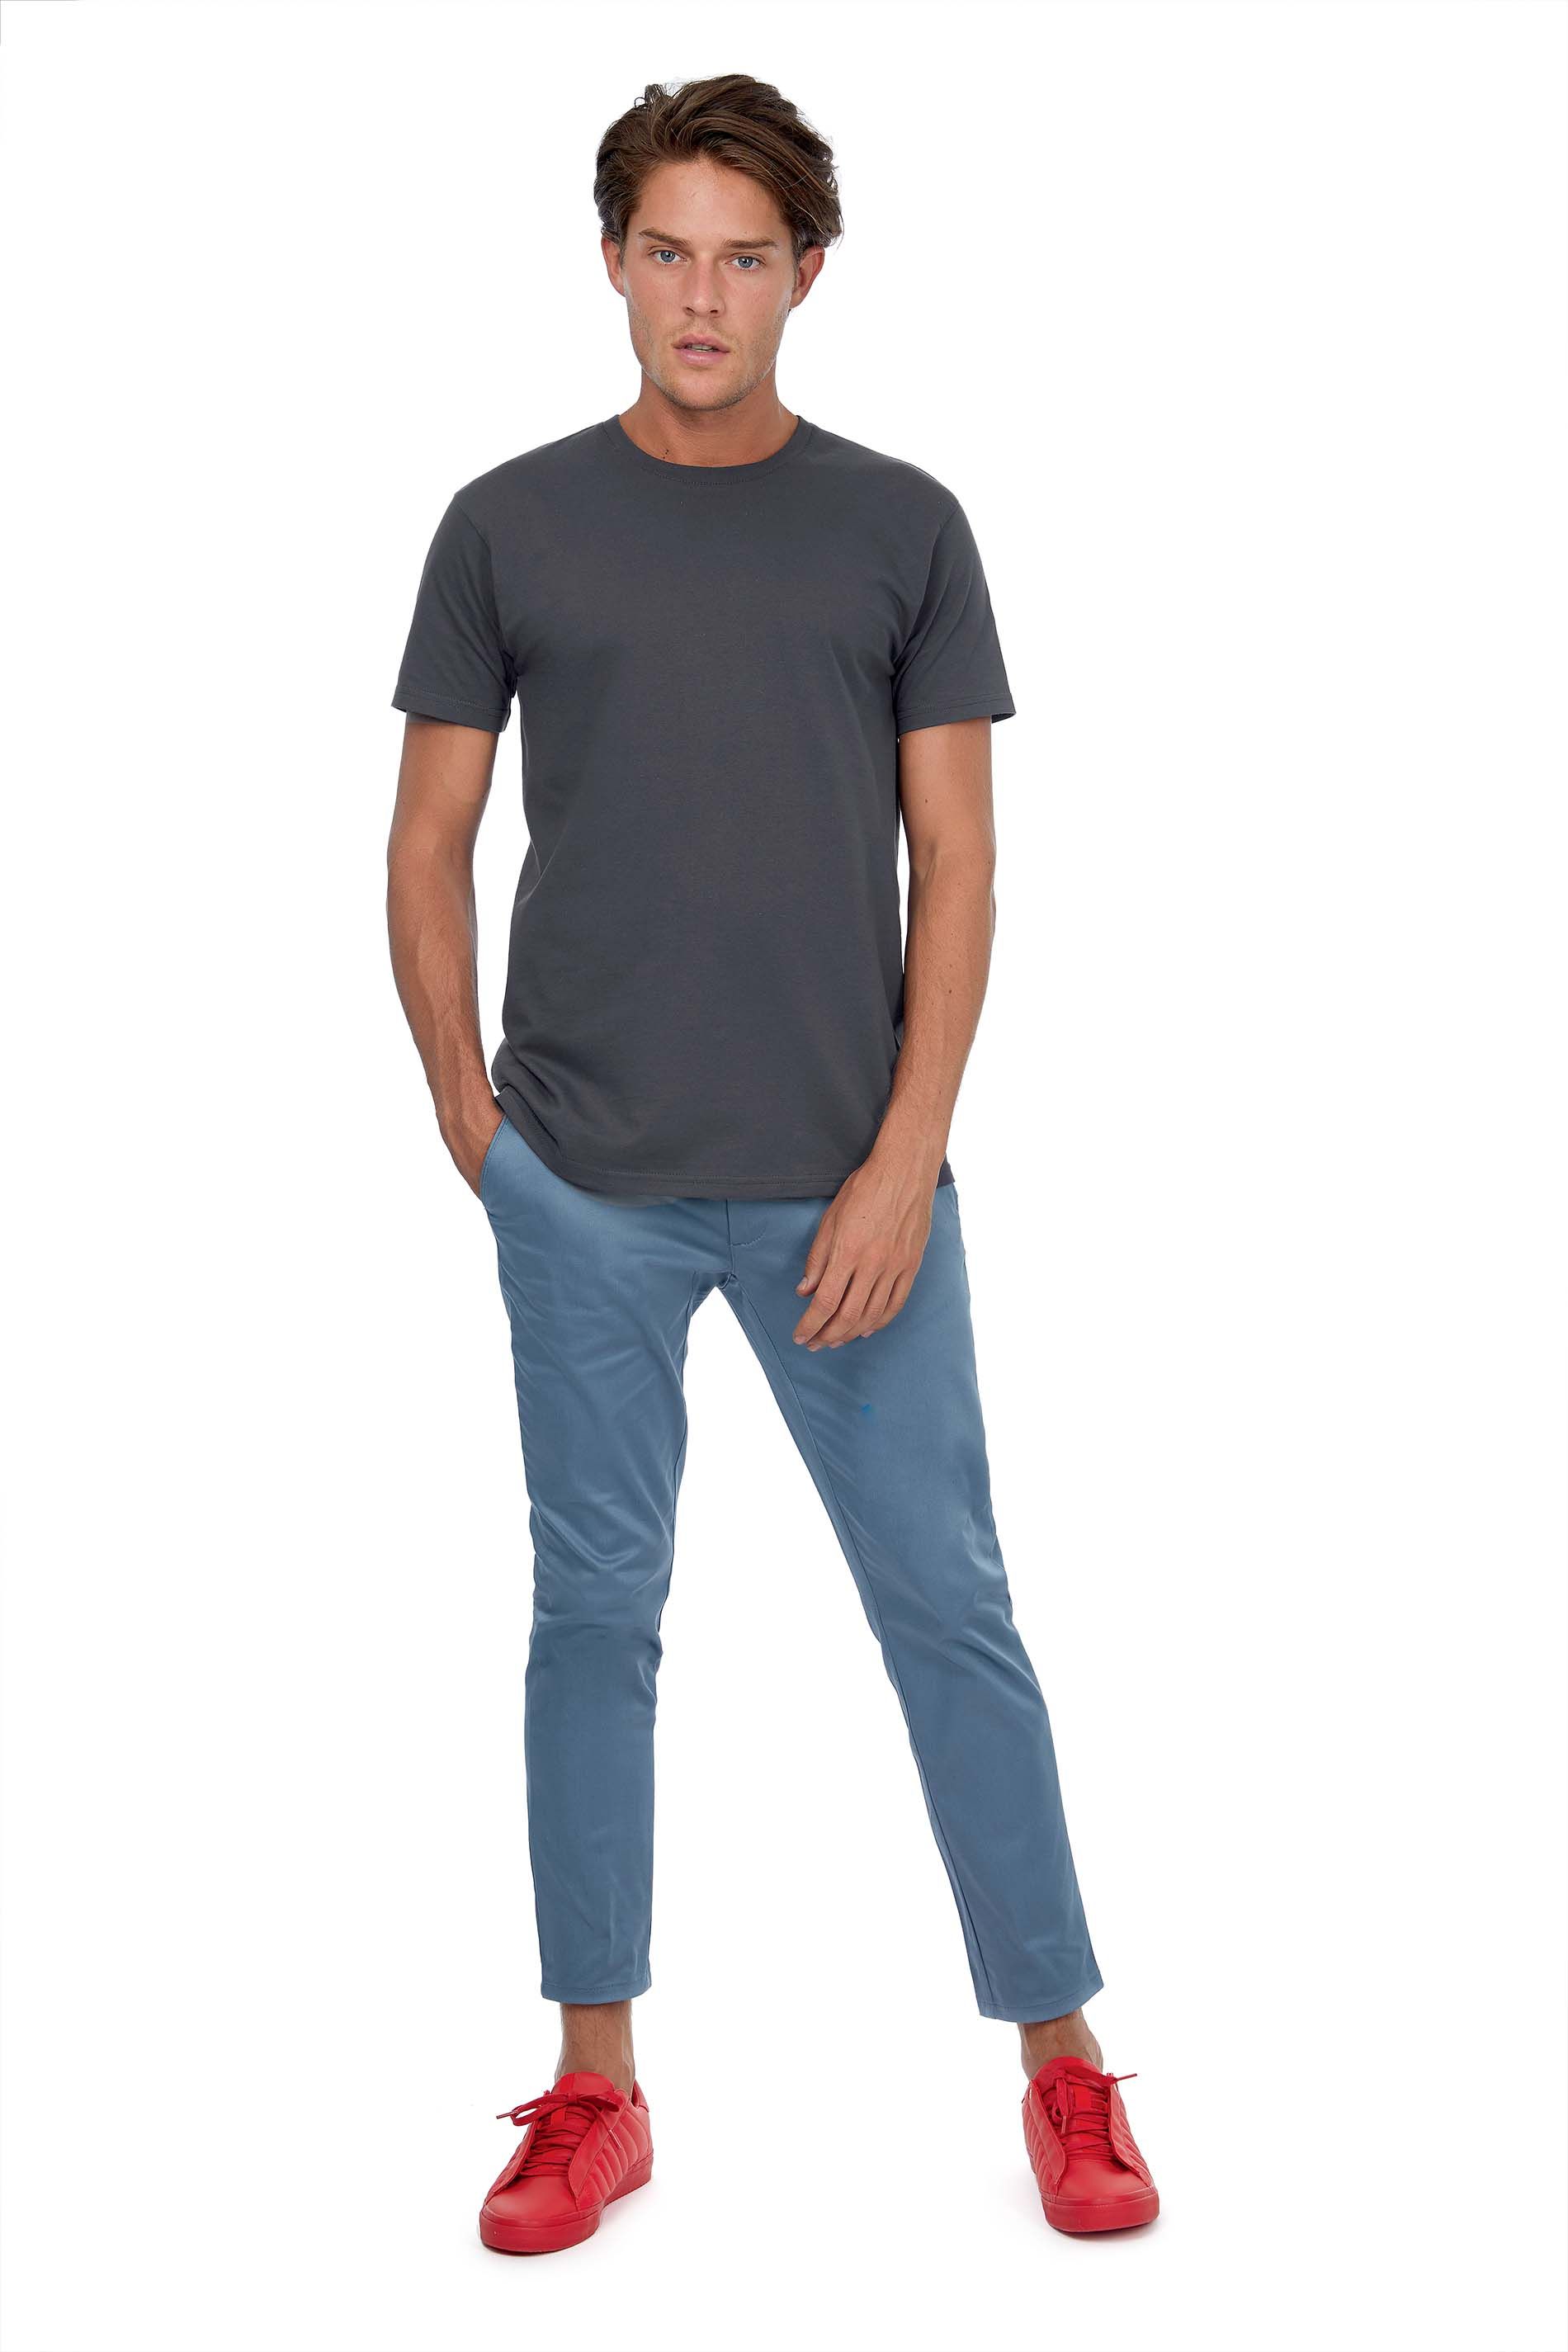 T-shirt à col rond personnalisable en ligne chez Textile Direct